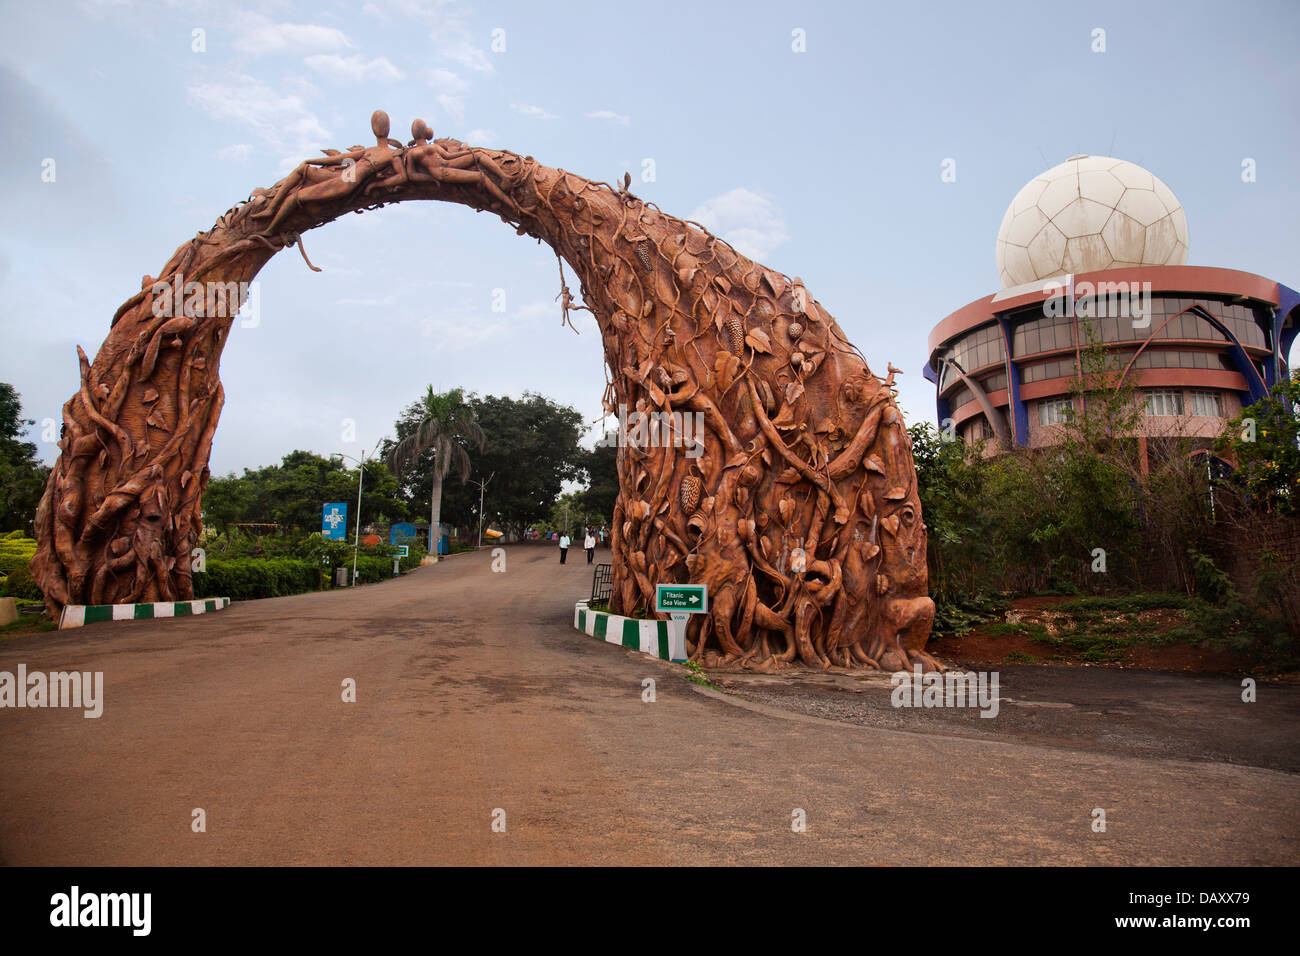 Archway sculptés avec les sculptures humaines à l'entrée du parc, Kailasagiri Park, Visakhapatnam, Andhra Pradesh, Inde Banque D'Images